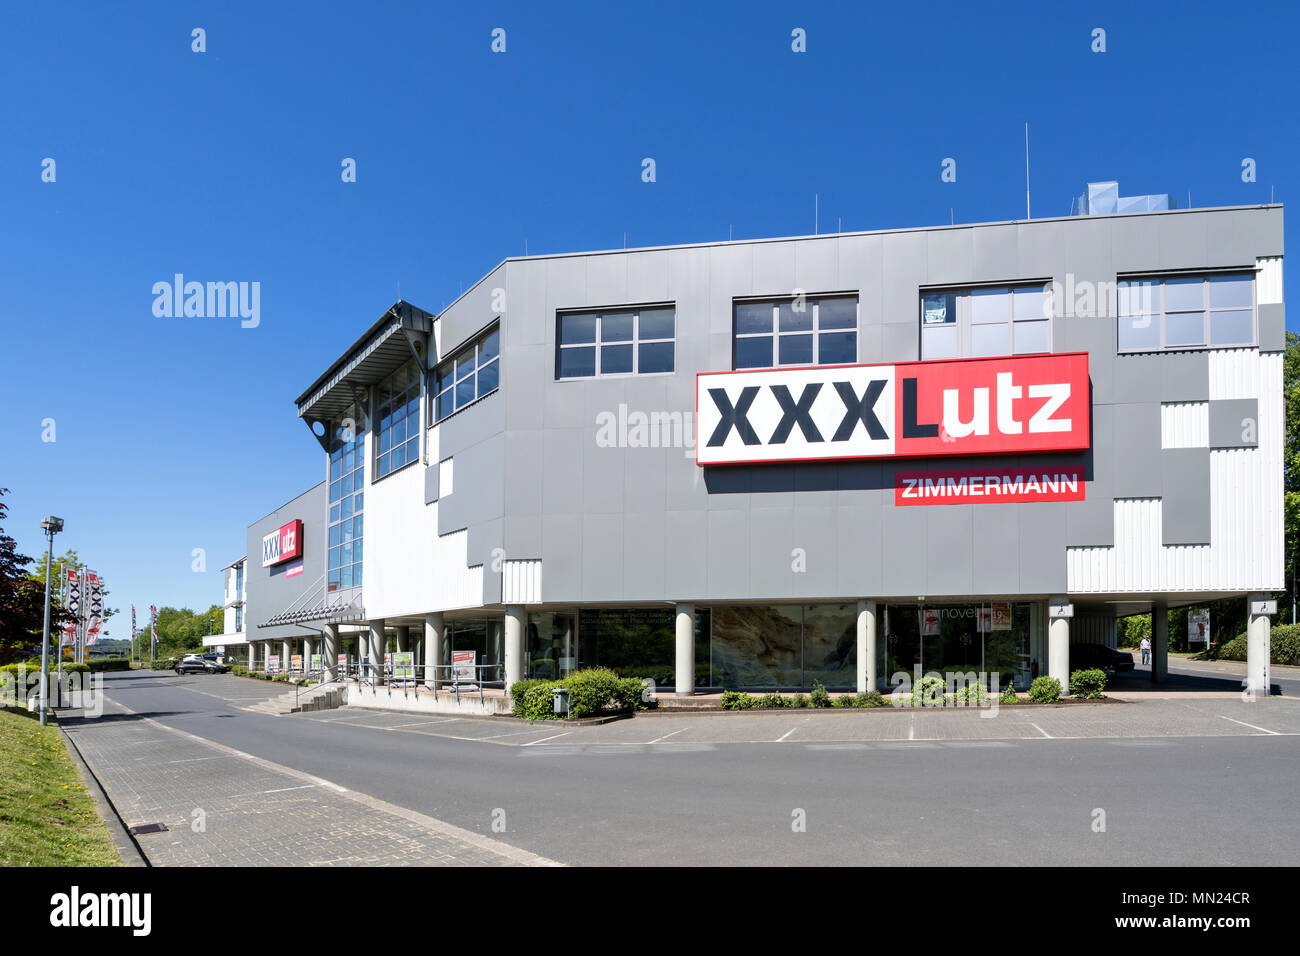 Magasin de meubles à XXXLutz Freudenberg, Allemagne. Autriche fondé XXXLutz est le deuxième plus grand détaillant de meubles dans le monde entier. Banque D'Images